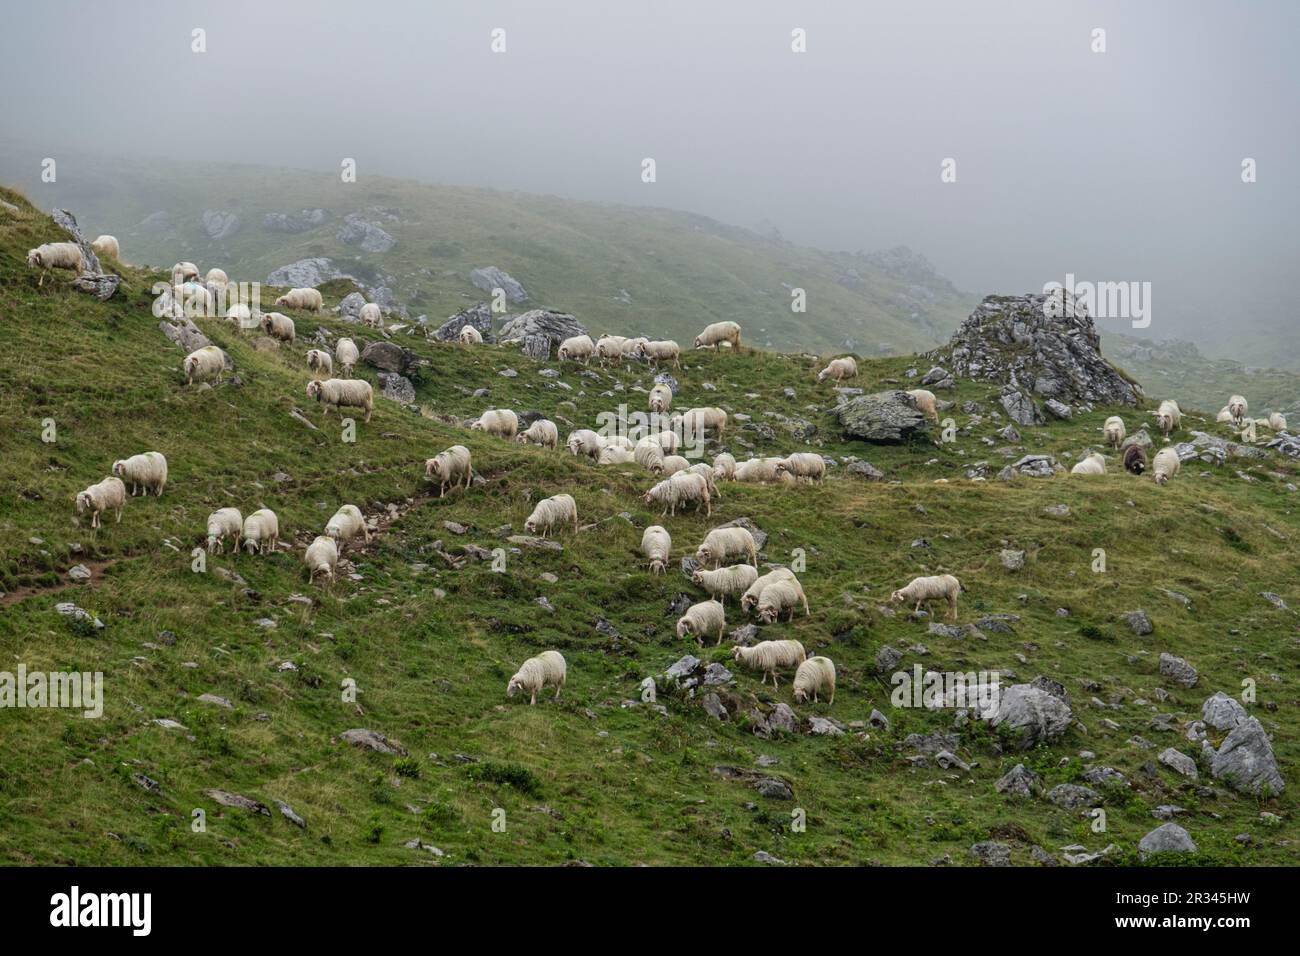 rebaño de ovejas cerca de la cabaña de Anaye, alta ruta pirenaica, región de Aquitania, departamento de Pirineos Atlánticos, Francia. Stock Photo